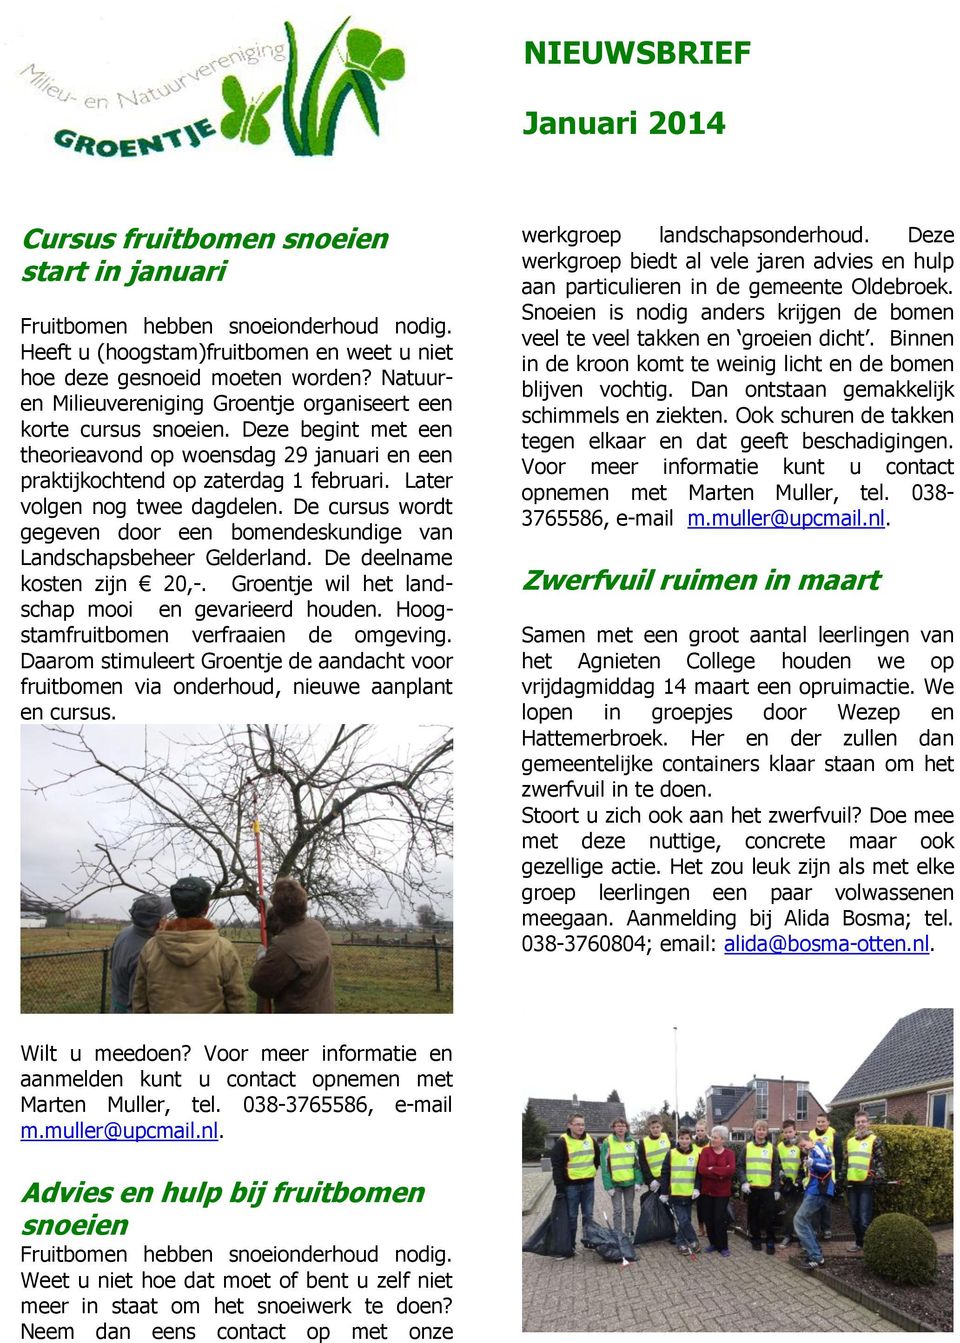 Later volgen nog twee dagdelen. De cursus wordt gegeven door een bomendeskundige van Landschapsbeheer Gelderland. De deelname kosten zijn 20,-. Groentje wil het landschap mooi en gevarieerd houden.